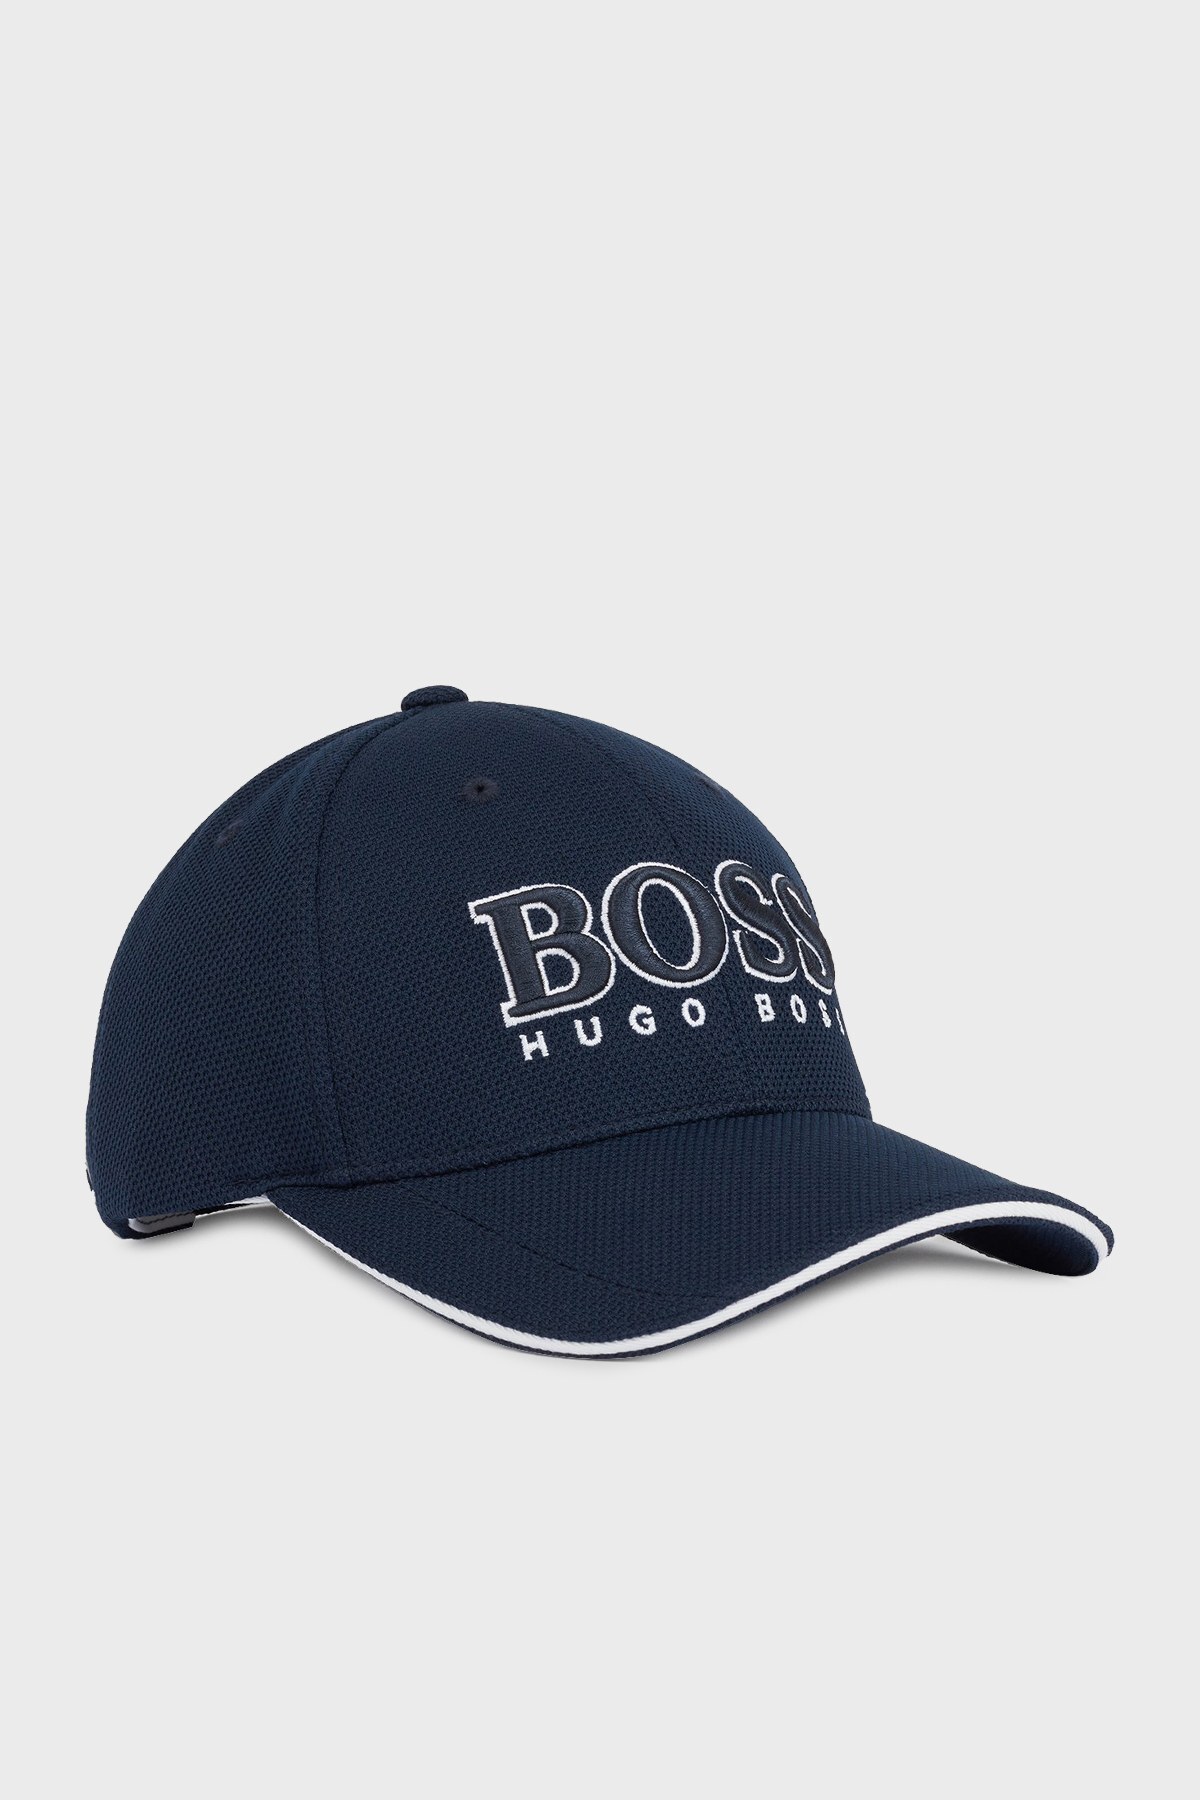 Boss Logo Detaylı Erkek Şapka 50443581 410 LACİVERT